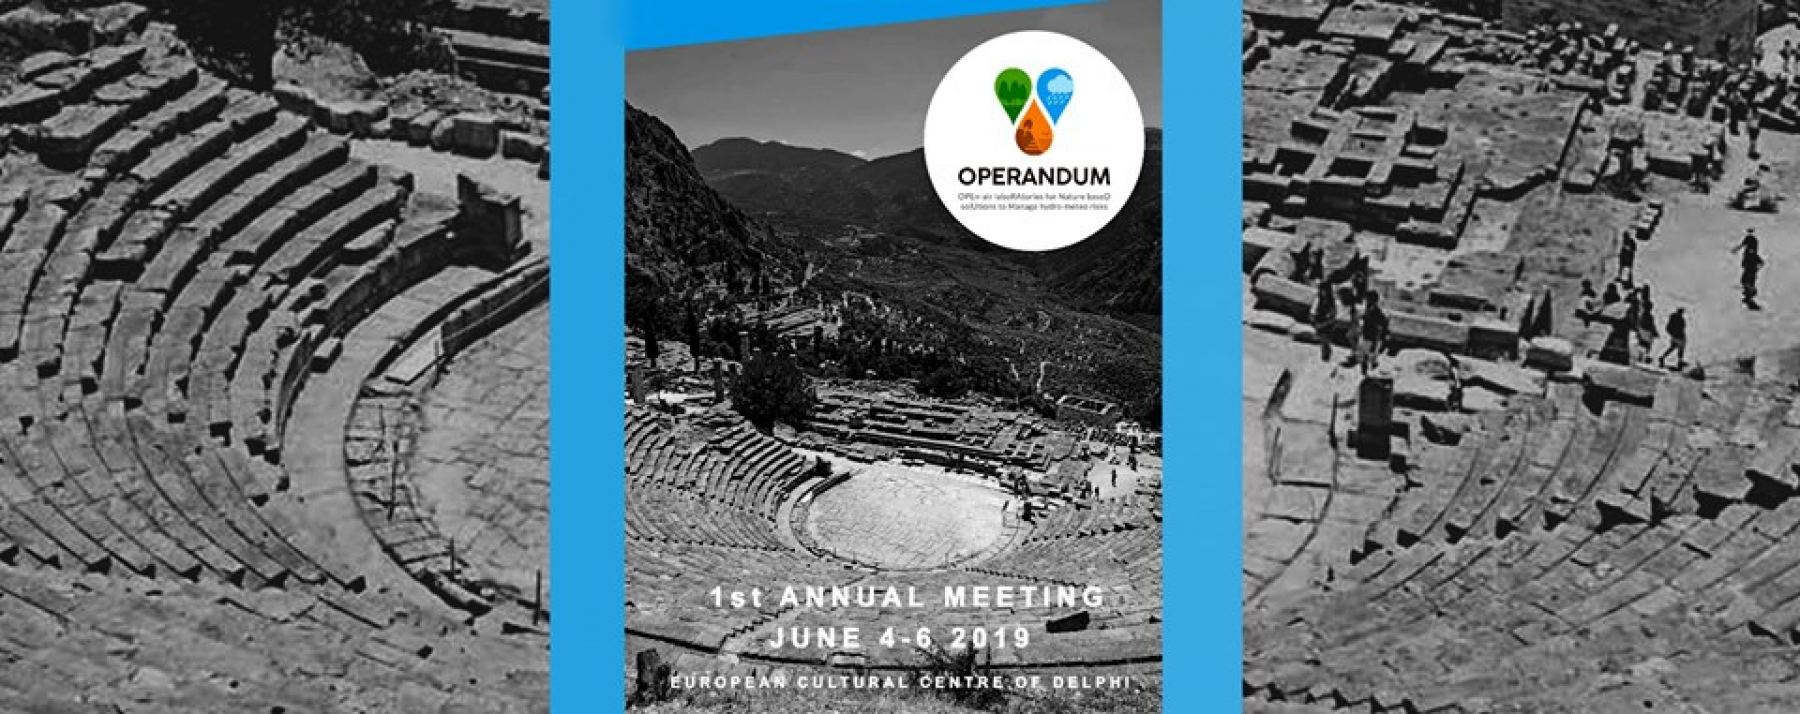 Στους Δελφούς το πρώτο ετήσιο συνέδριο OPERANDUM Project!